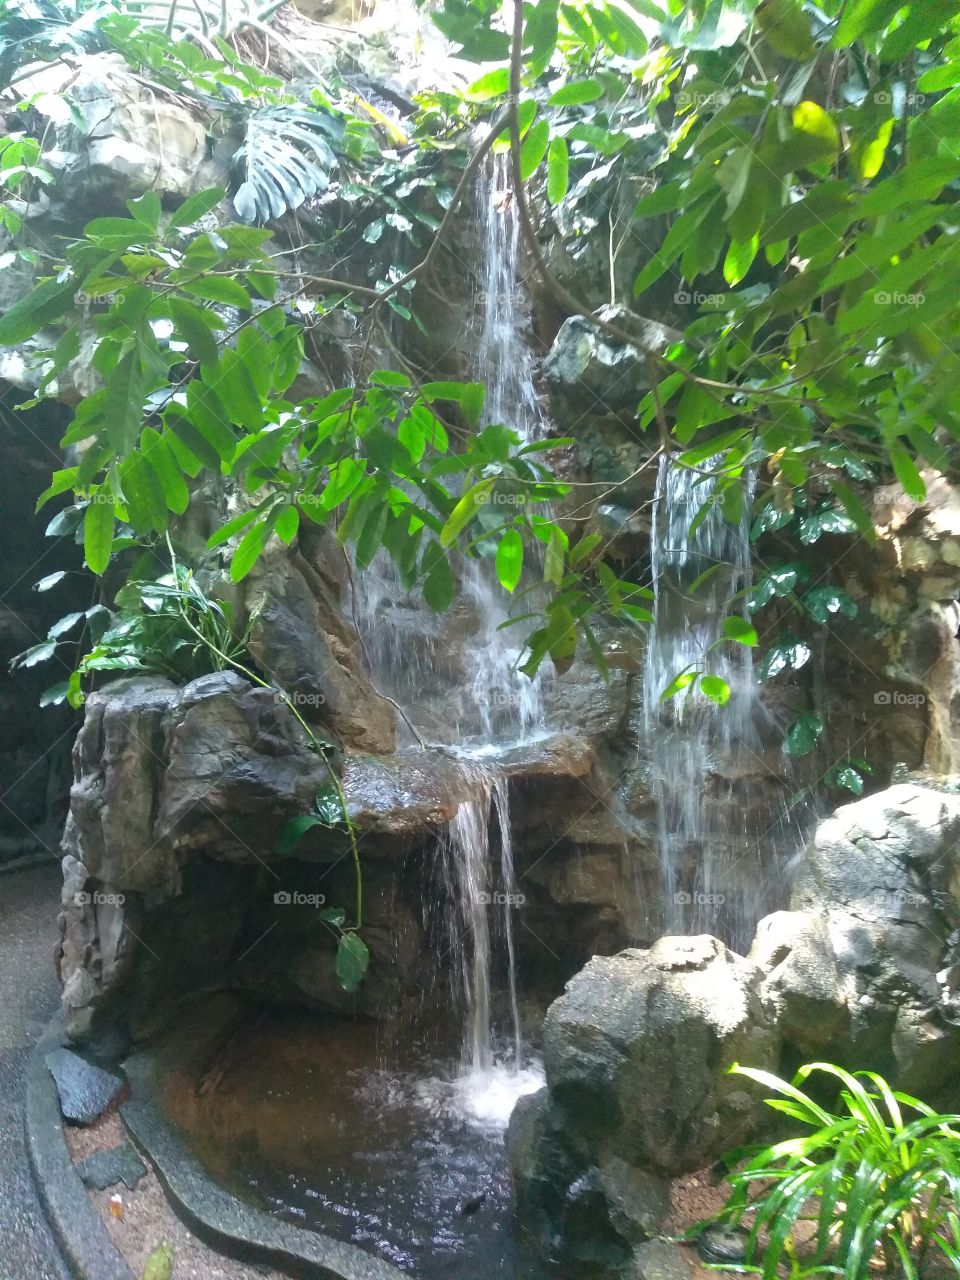 Aviary waterfall